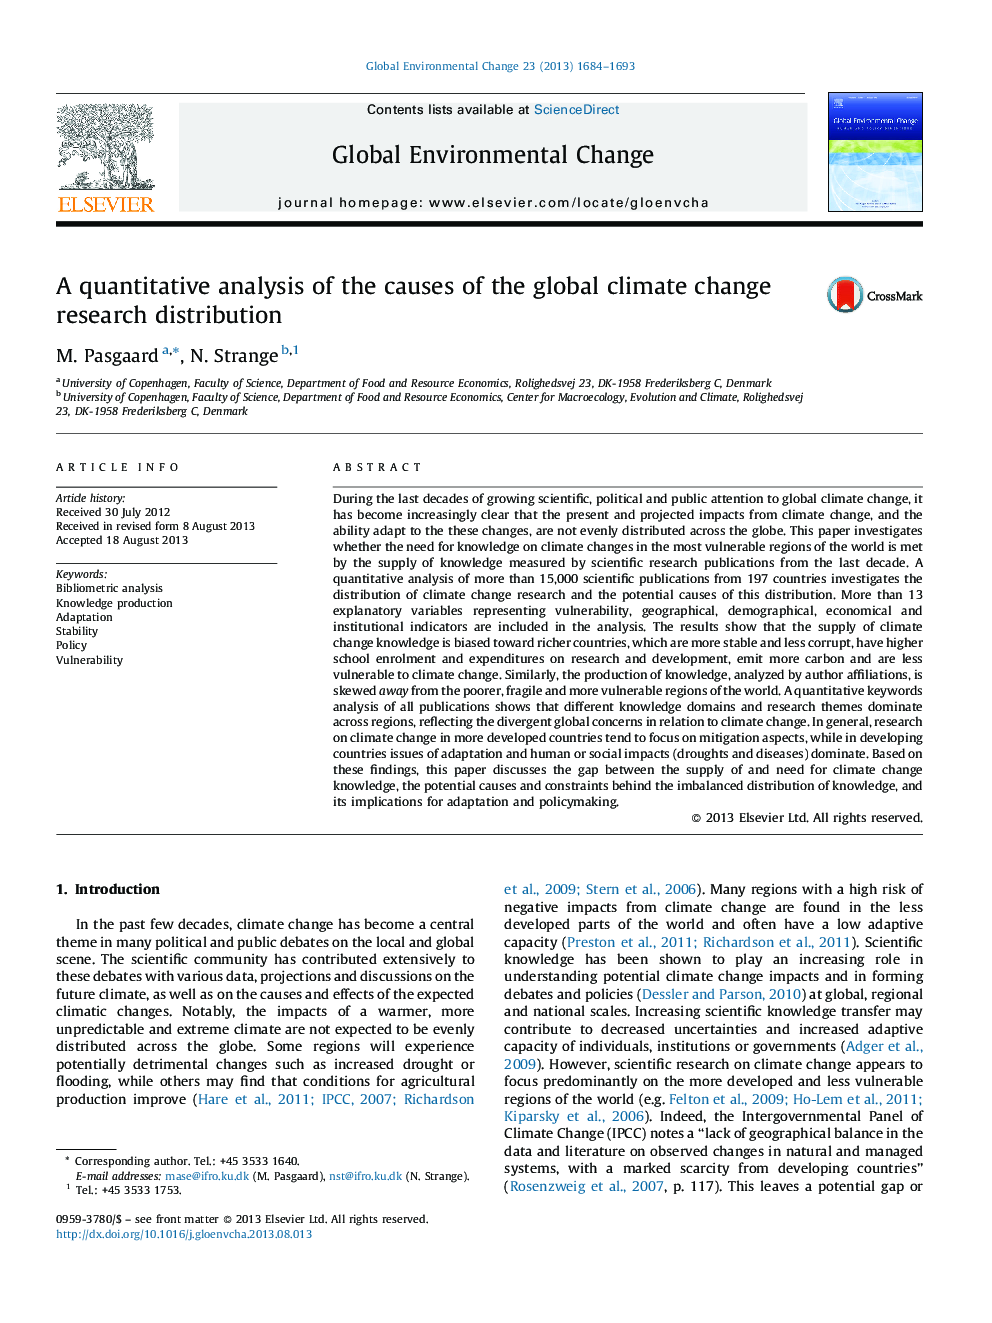 تجزیه و تحلیل کمی از علل توزیع تحقیق تغییرات اقلیمی جهانی 